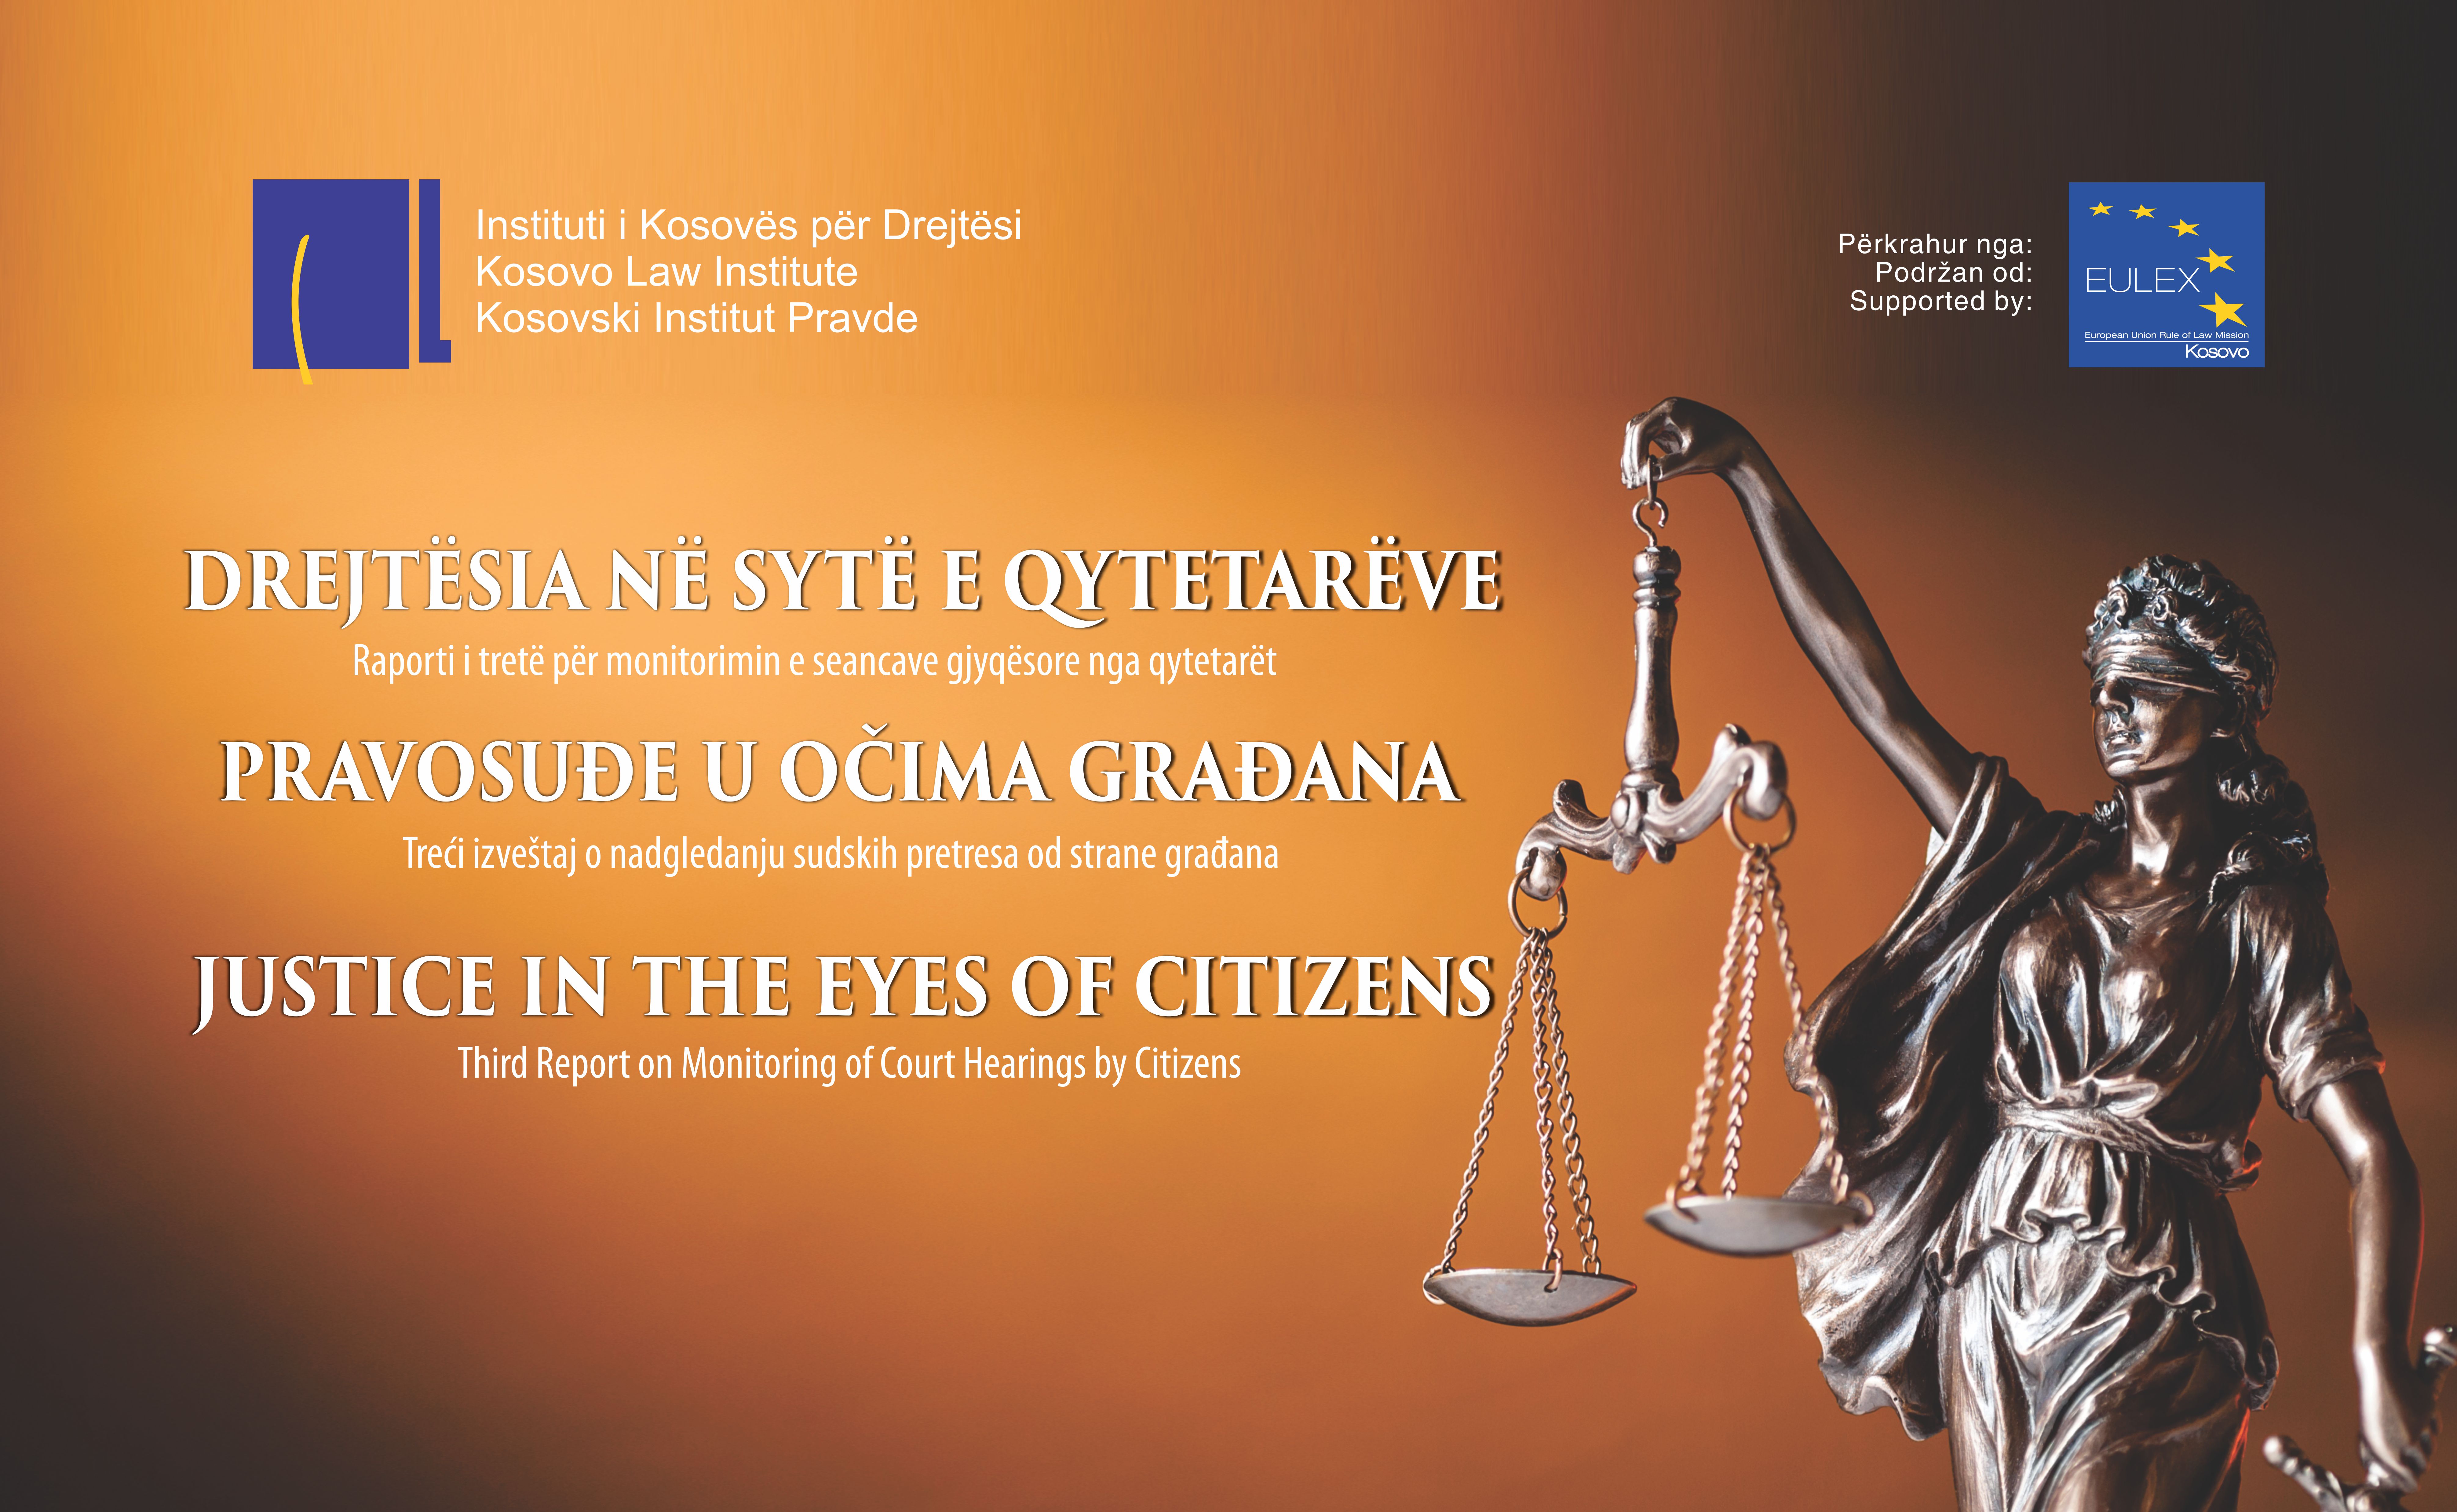 Pravosuđe u očima građana